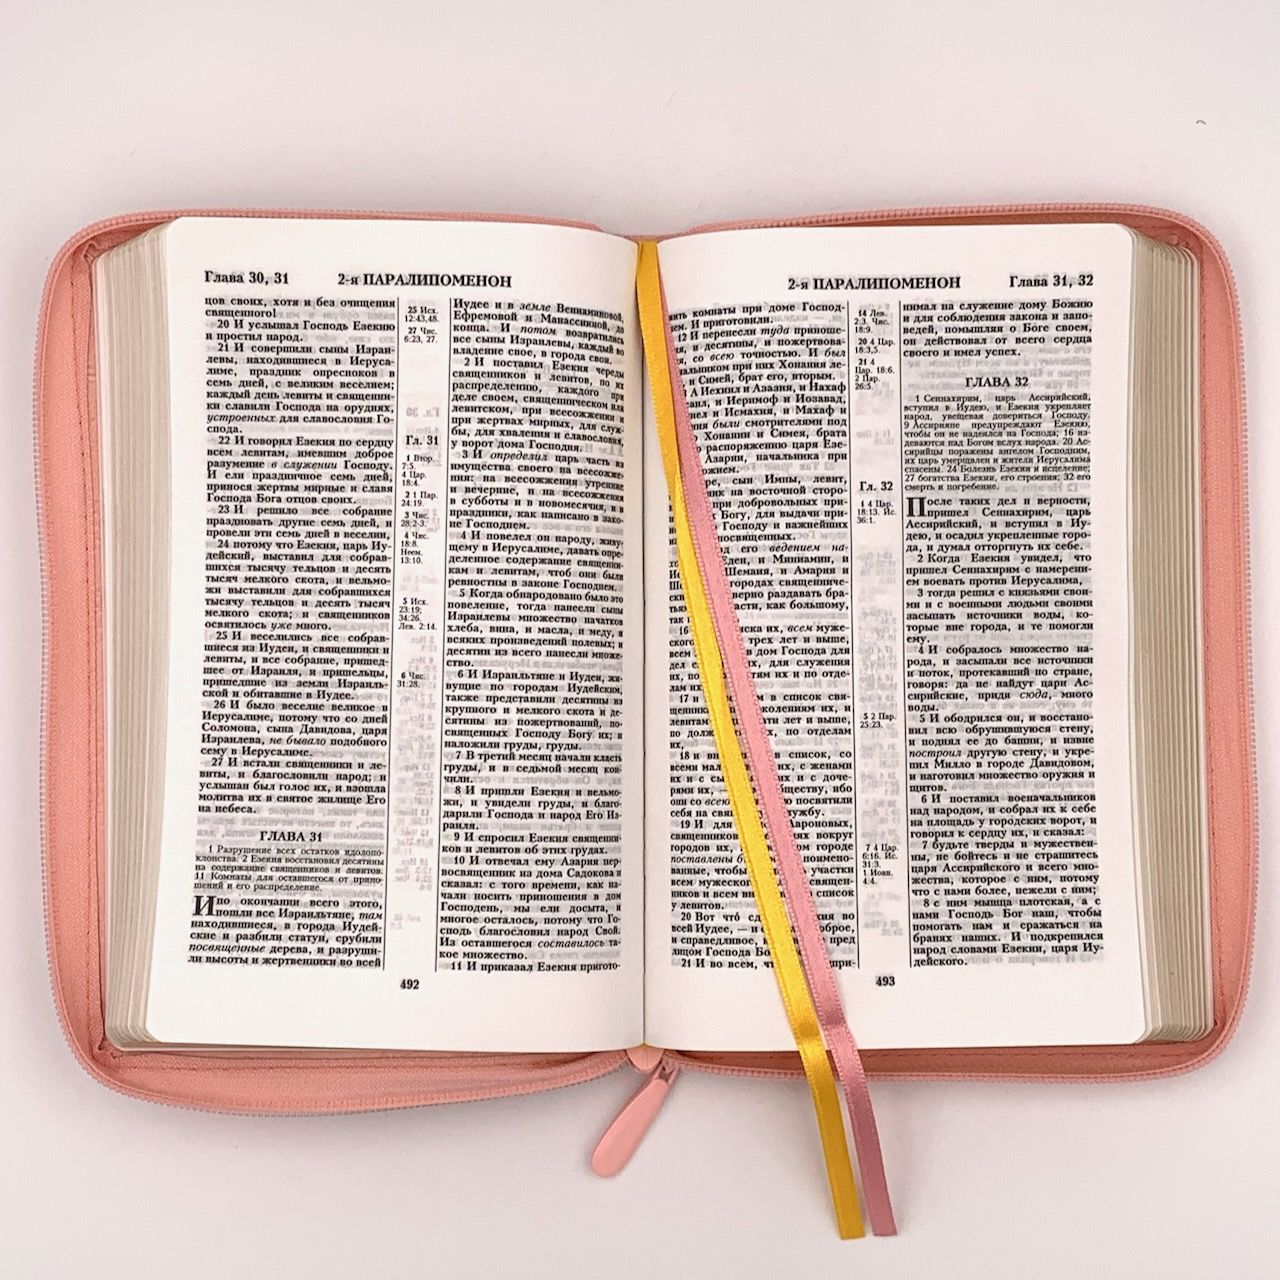 Библия 055z код I1a дизайн "сердце" термо штамп, переплет из искусственной кожи на молнии, цвет розовый, средний формат, 143*220 мм,